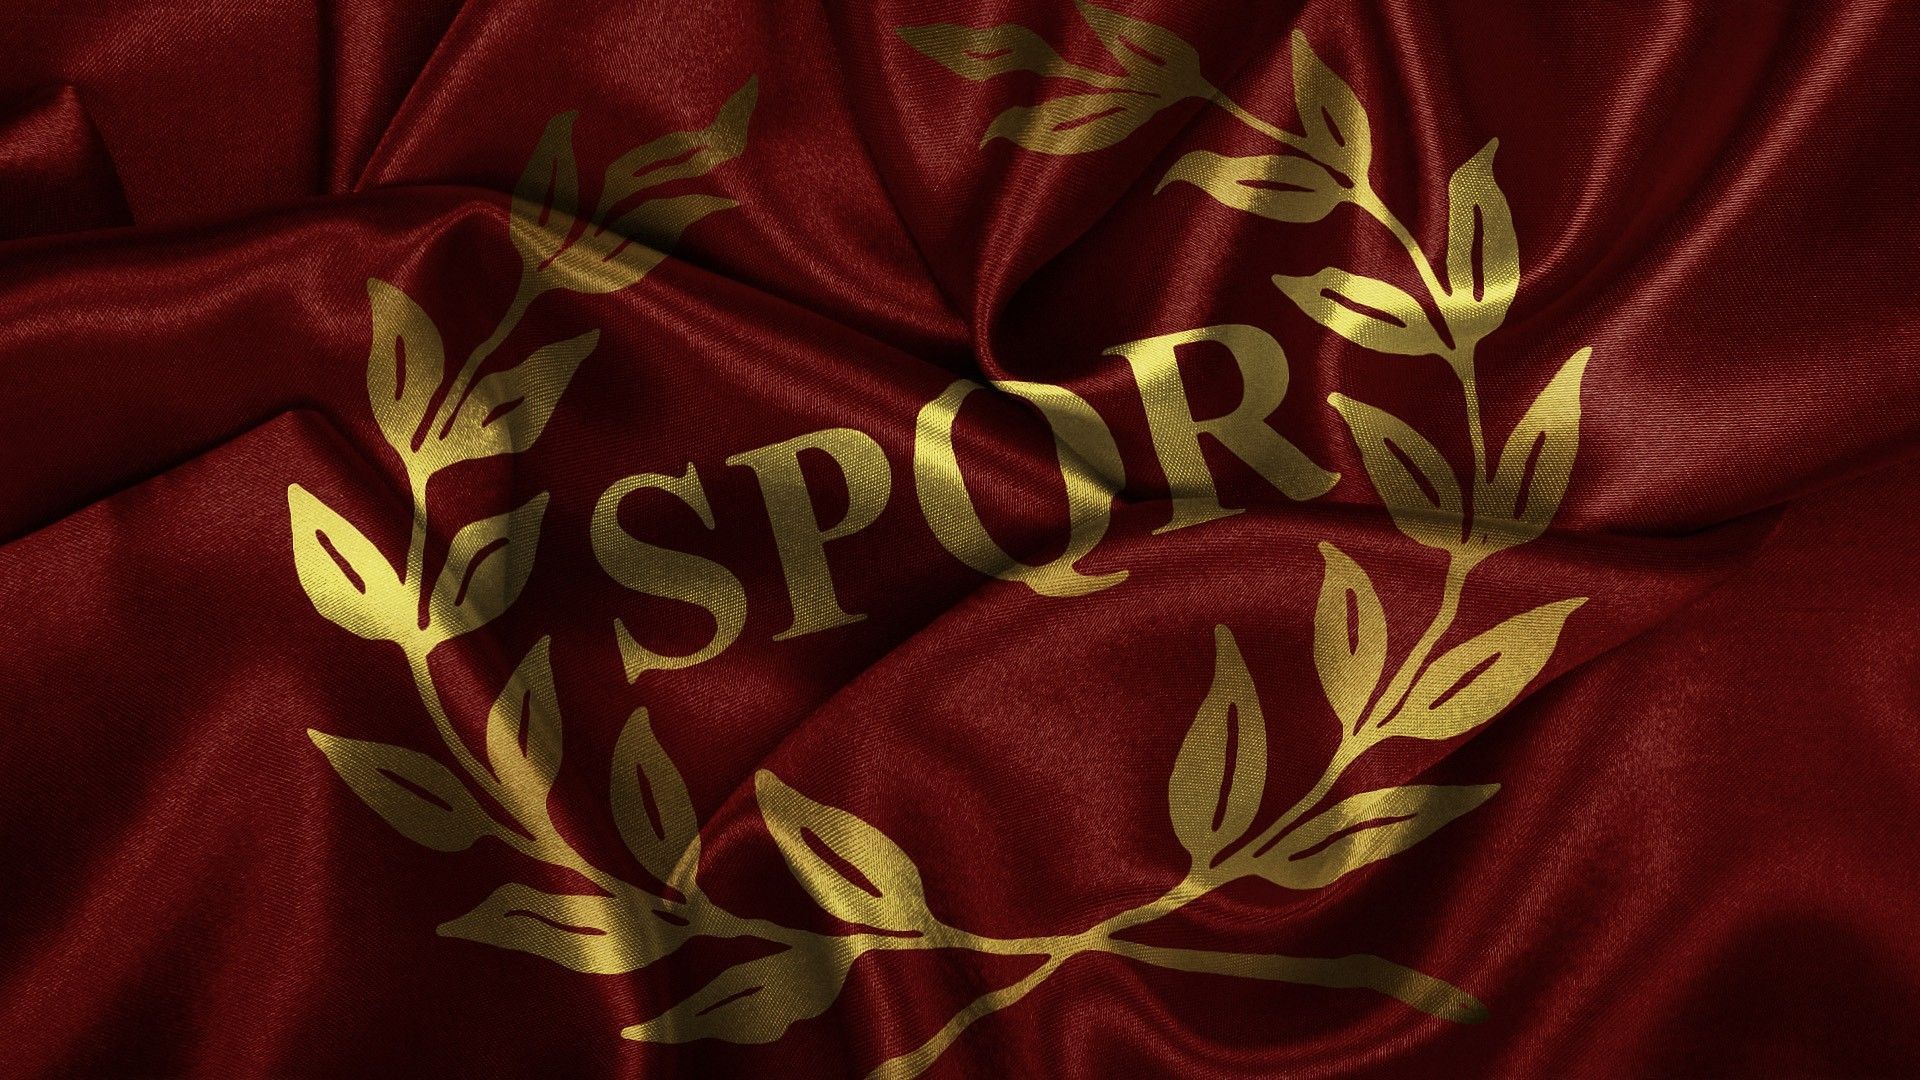 Flags Roman SPQR wallpaper | 1920x1080 | 181816 | WallpaperUP